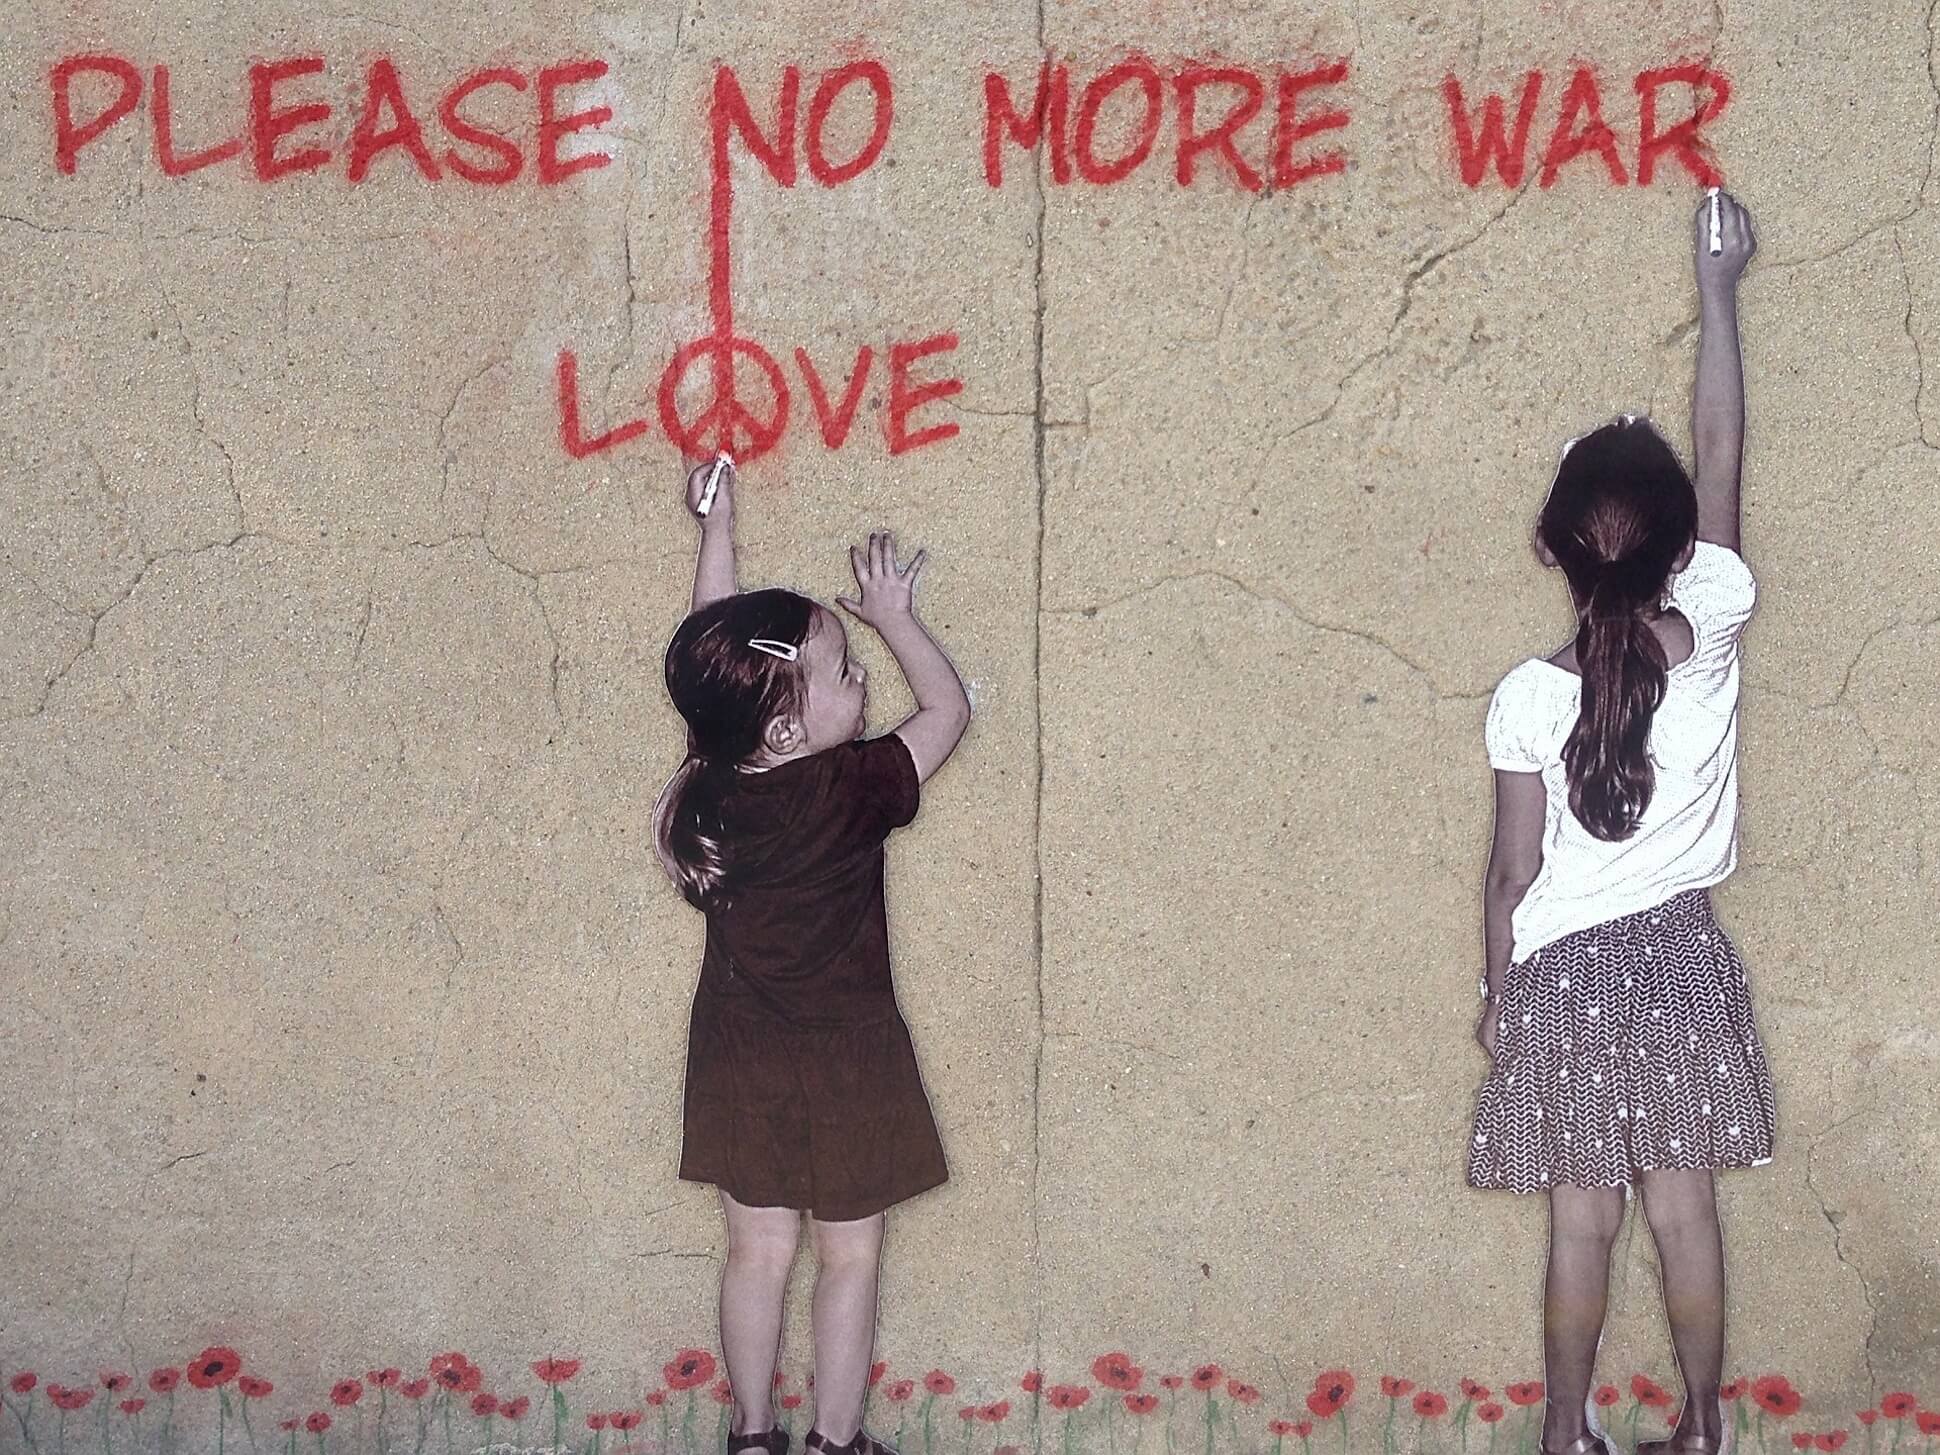 Graffiti of girls protesting war by Annette Jones for Pixabay